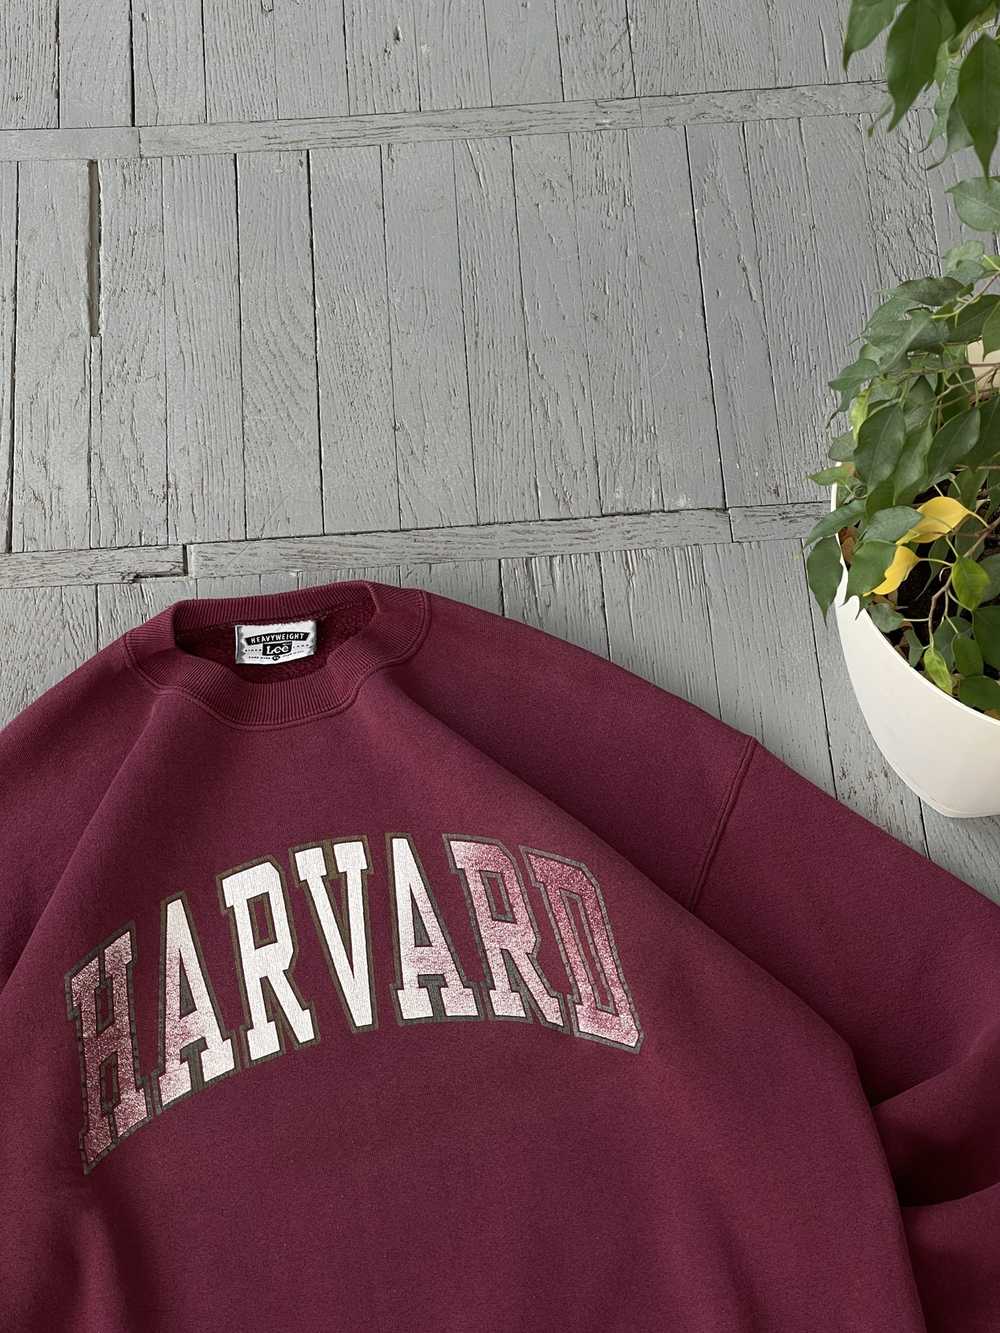 American College × Lee × Vintage Vintage Harvard … - image 2